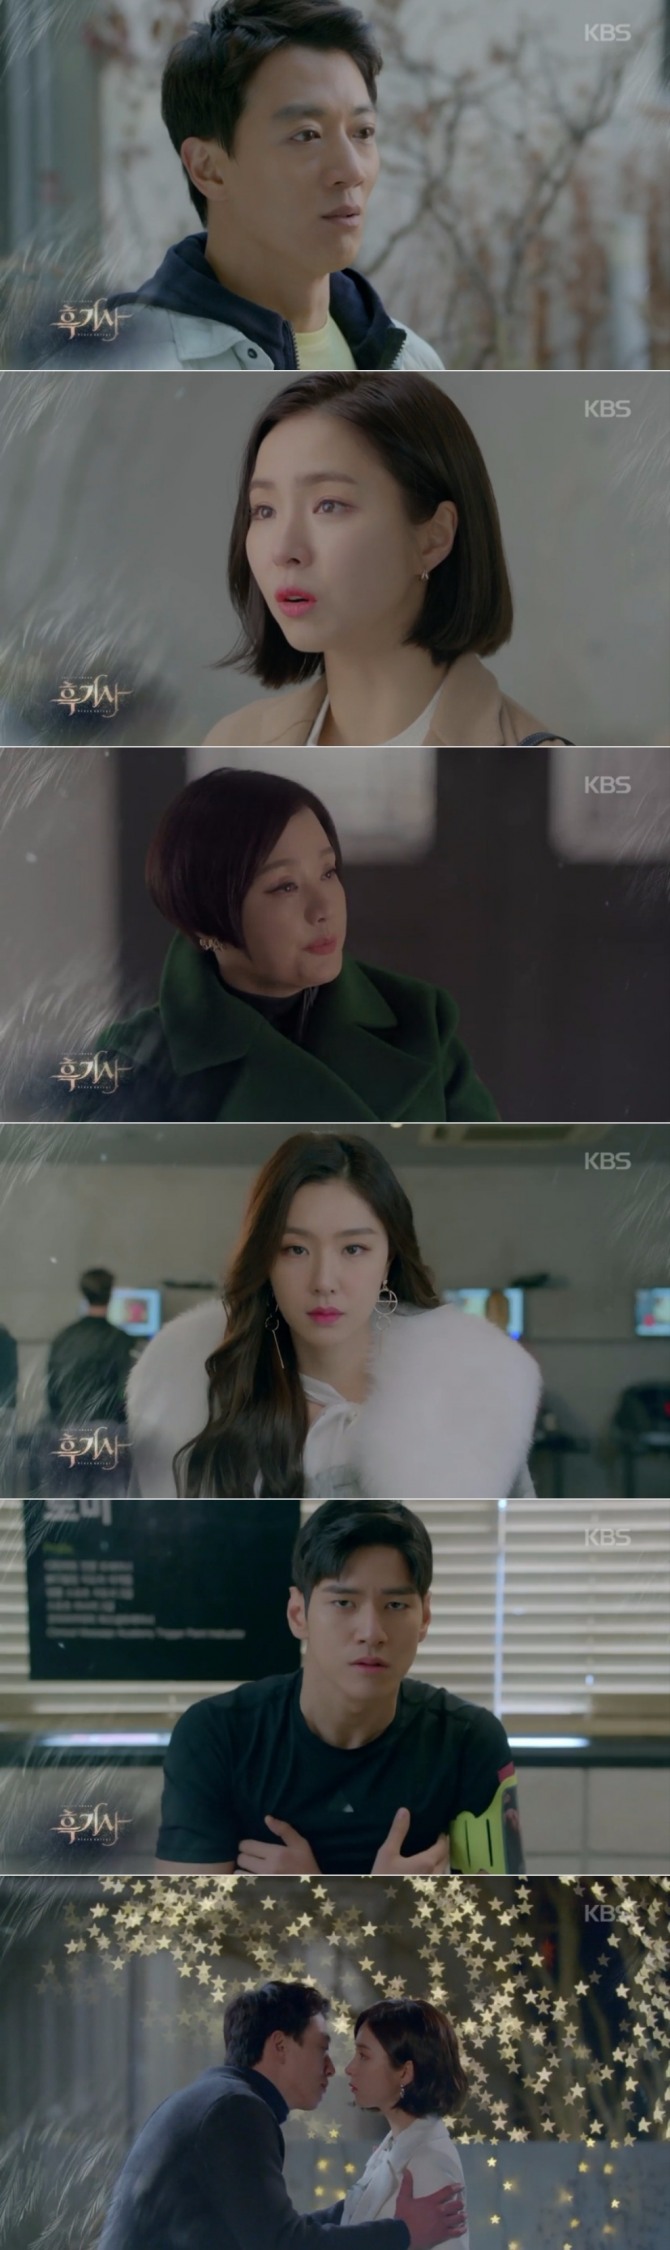 14일 오후 방송되는 KBS2 수목드라마 '흑기사' 4회에서는 문수호(김래원)가 첫사랑 정해라(신세경)에게 키스를 시도하는 장면이 그려져 기대감을 높이고 있다. 사진=KBS 영상 캡처